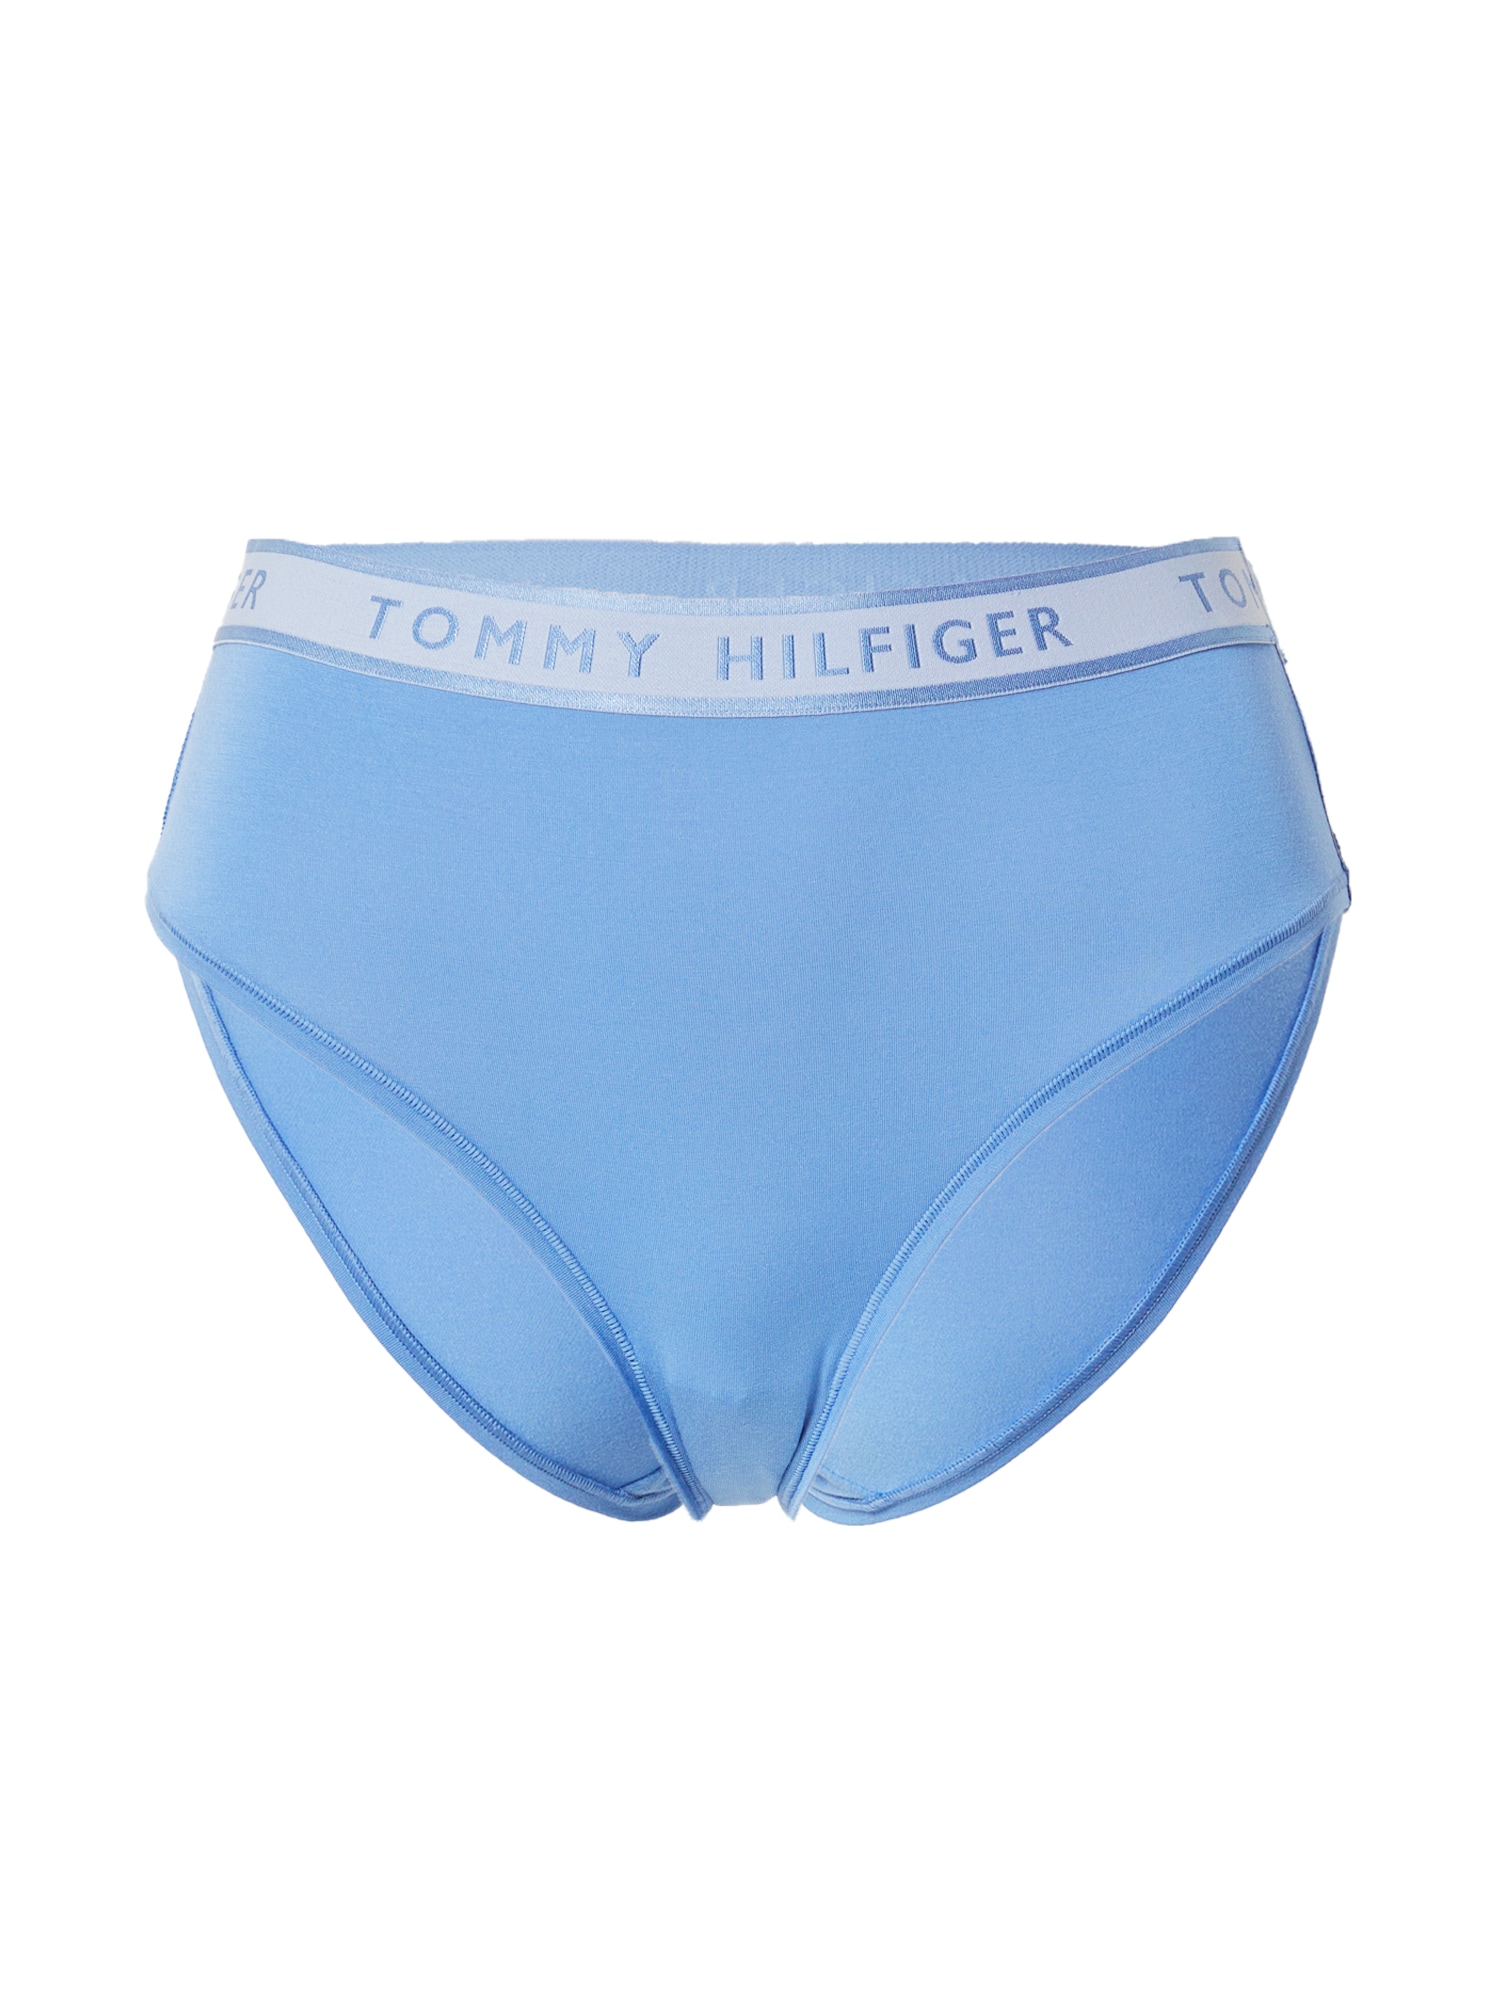 Tommy Hilfiger Underwear Spodnje hlačke  modra / bela